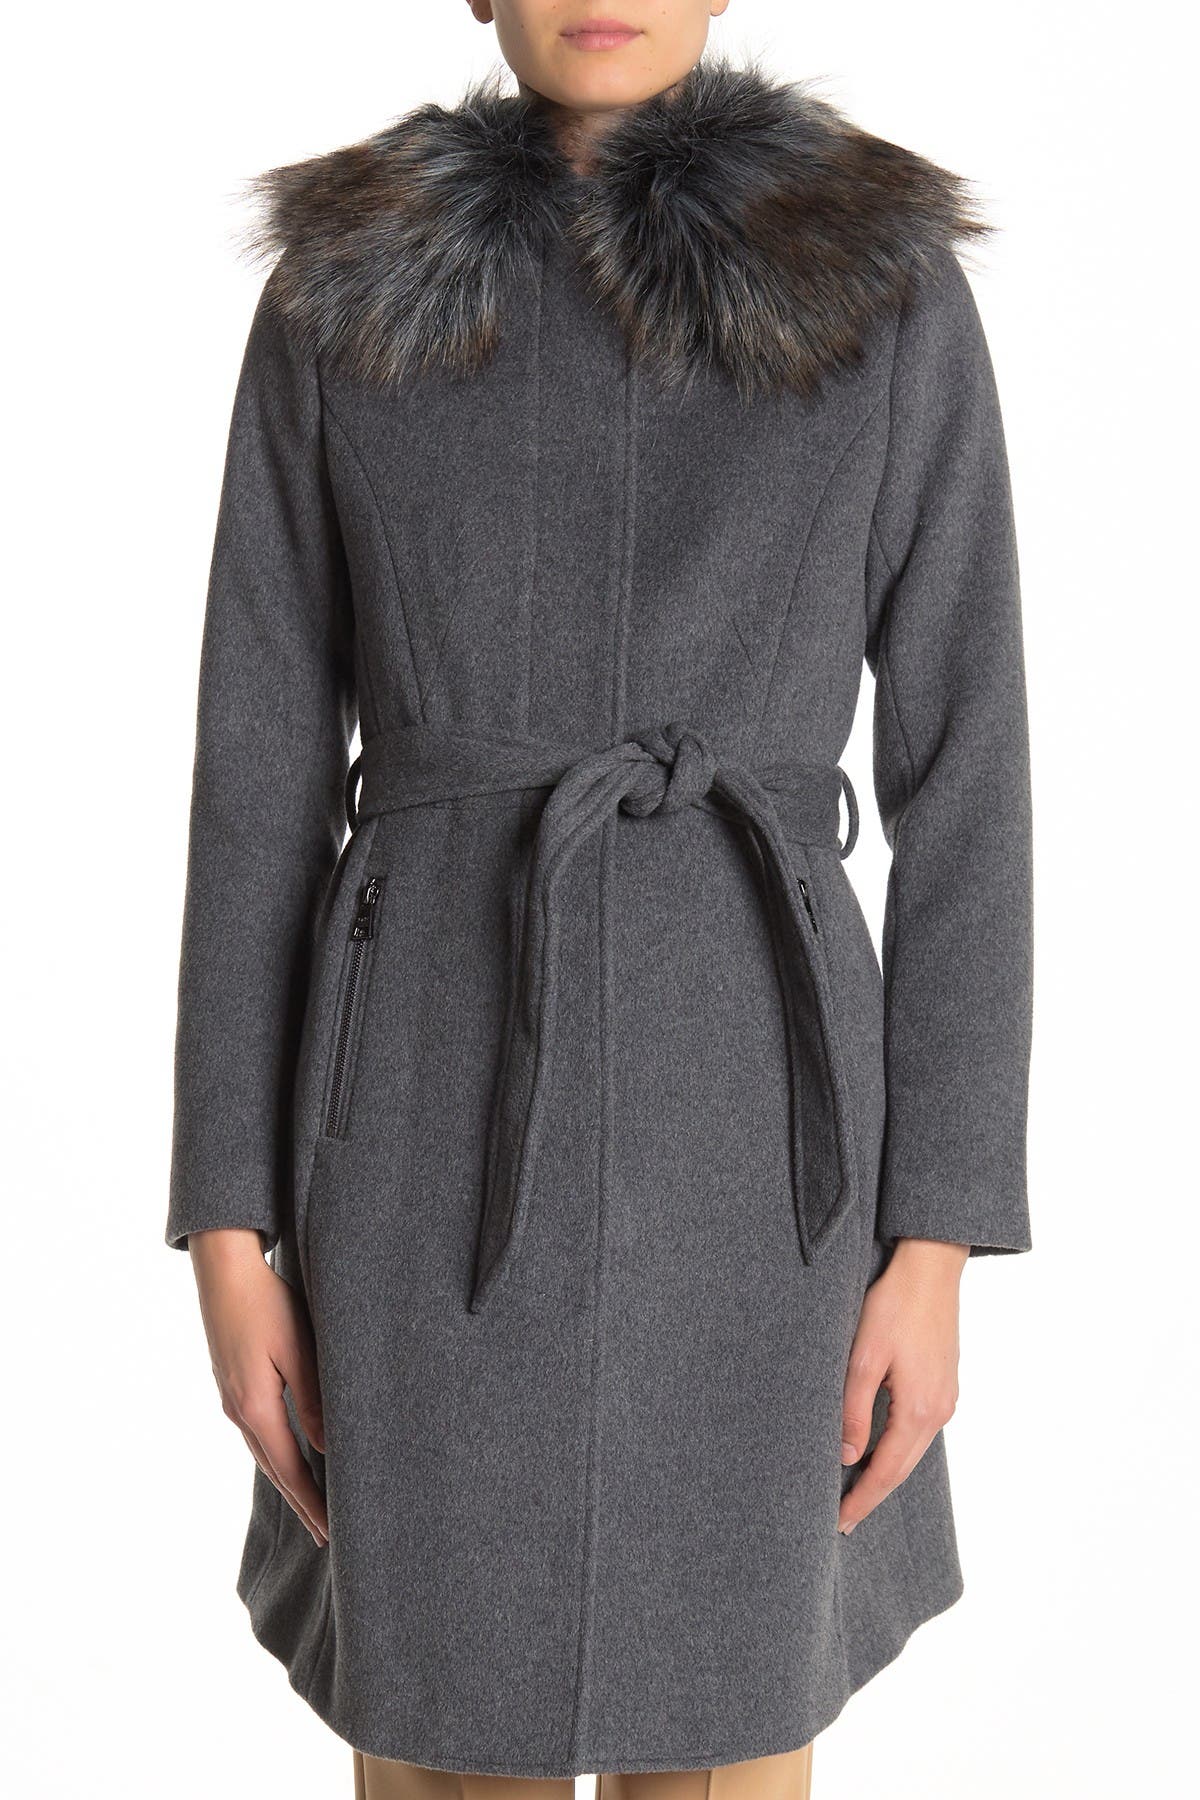 Karl Lagerfeld | Faux Fur Trim Wool Blend Coat | Nordstrom Rack